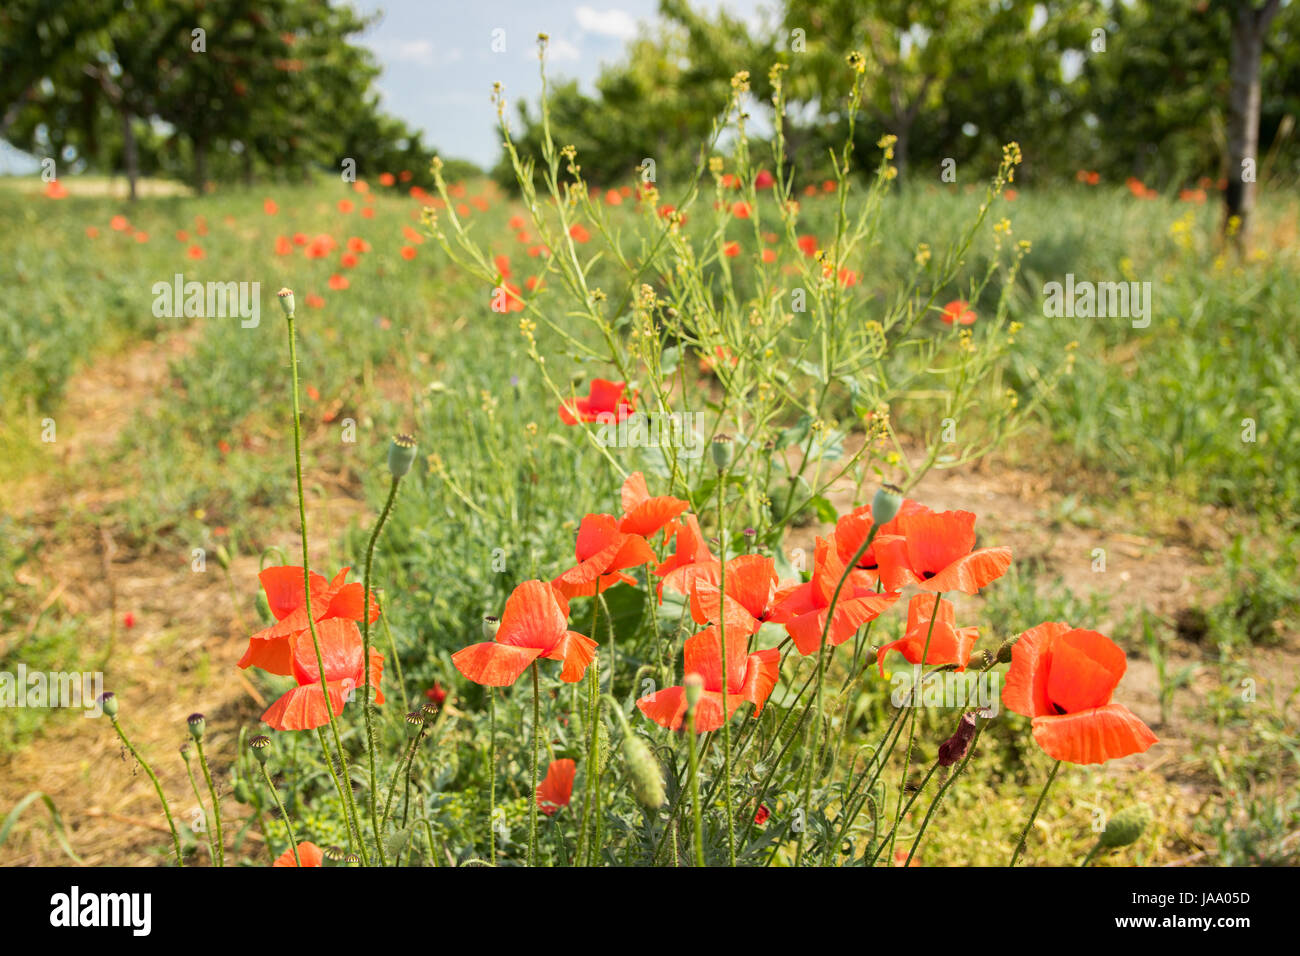 Poppy flowers in the field Stock Photo